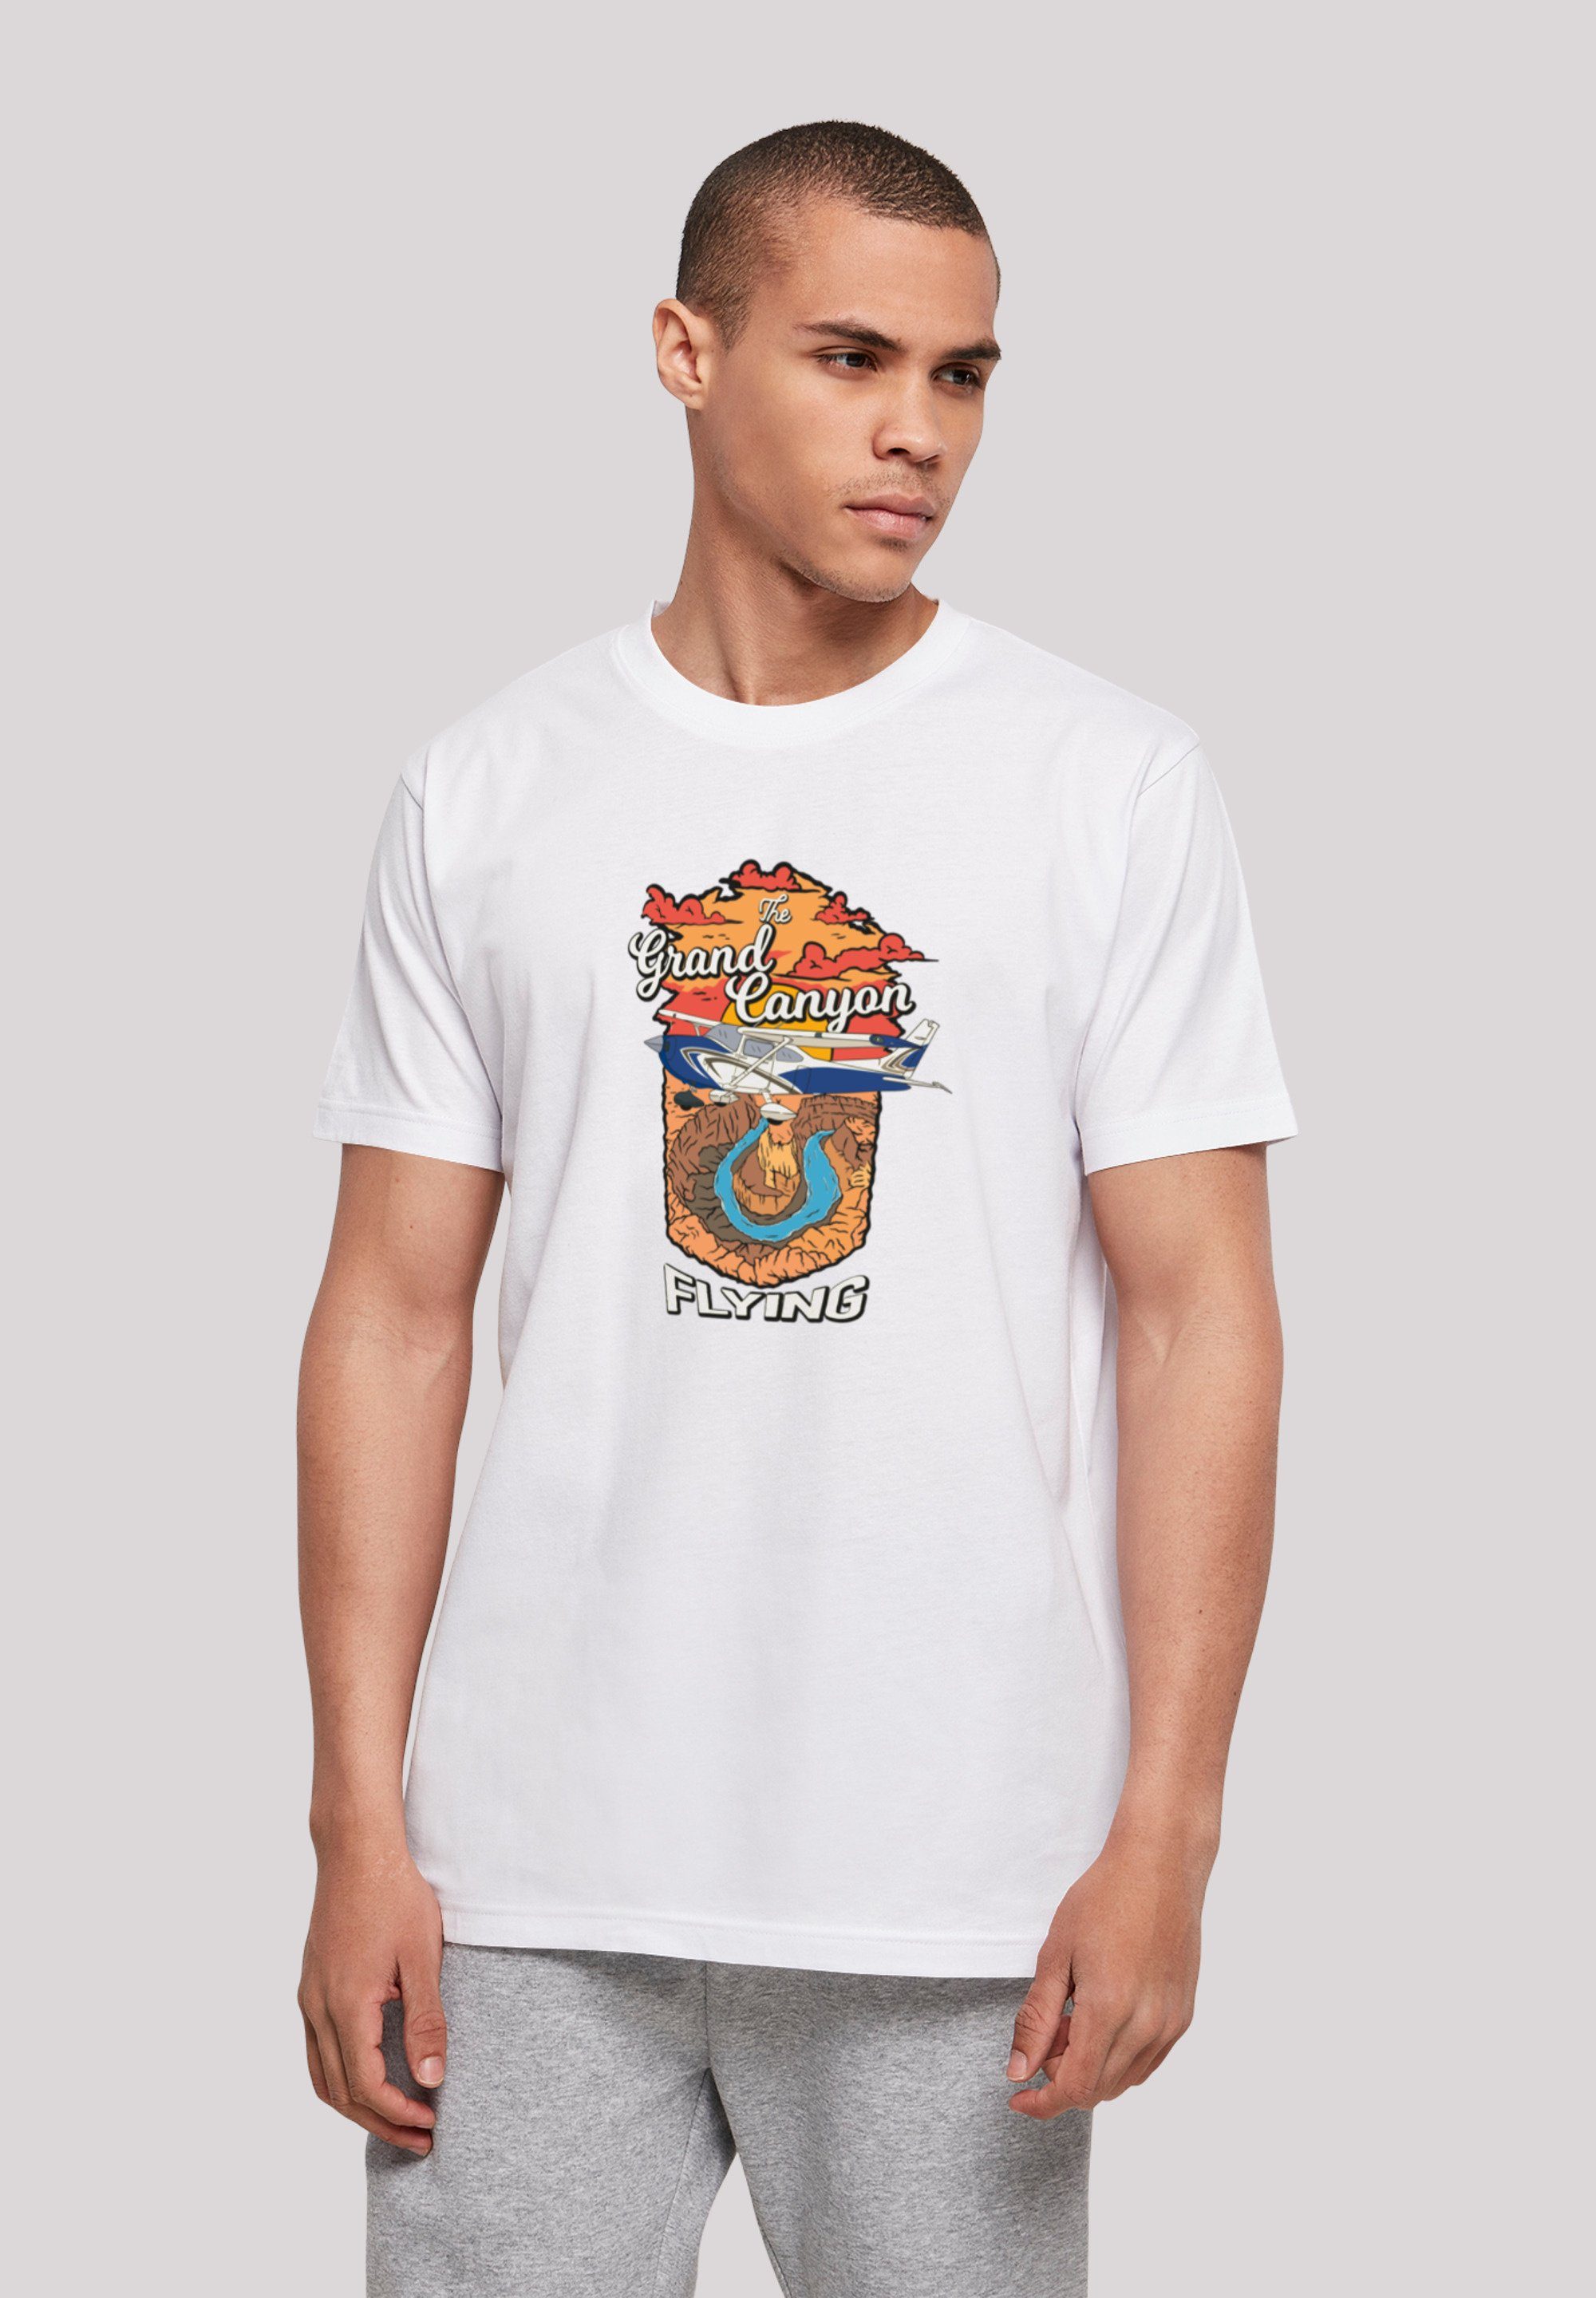 F4NT4STIC T-Shirt Grand Canyon Flying Print, Sehr weicher Baumwollstoff mit  hohem Tragekomfort